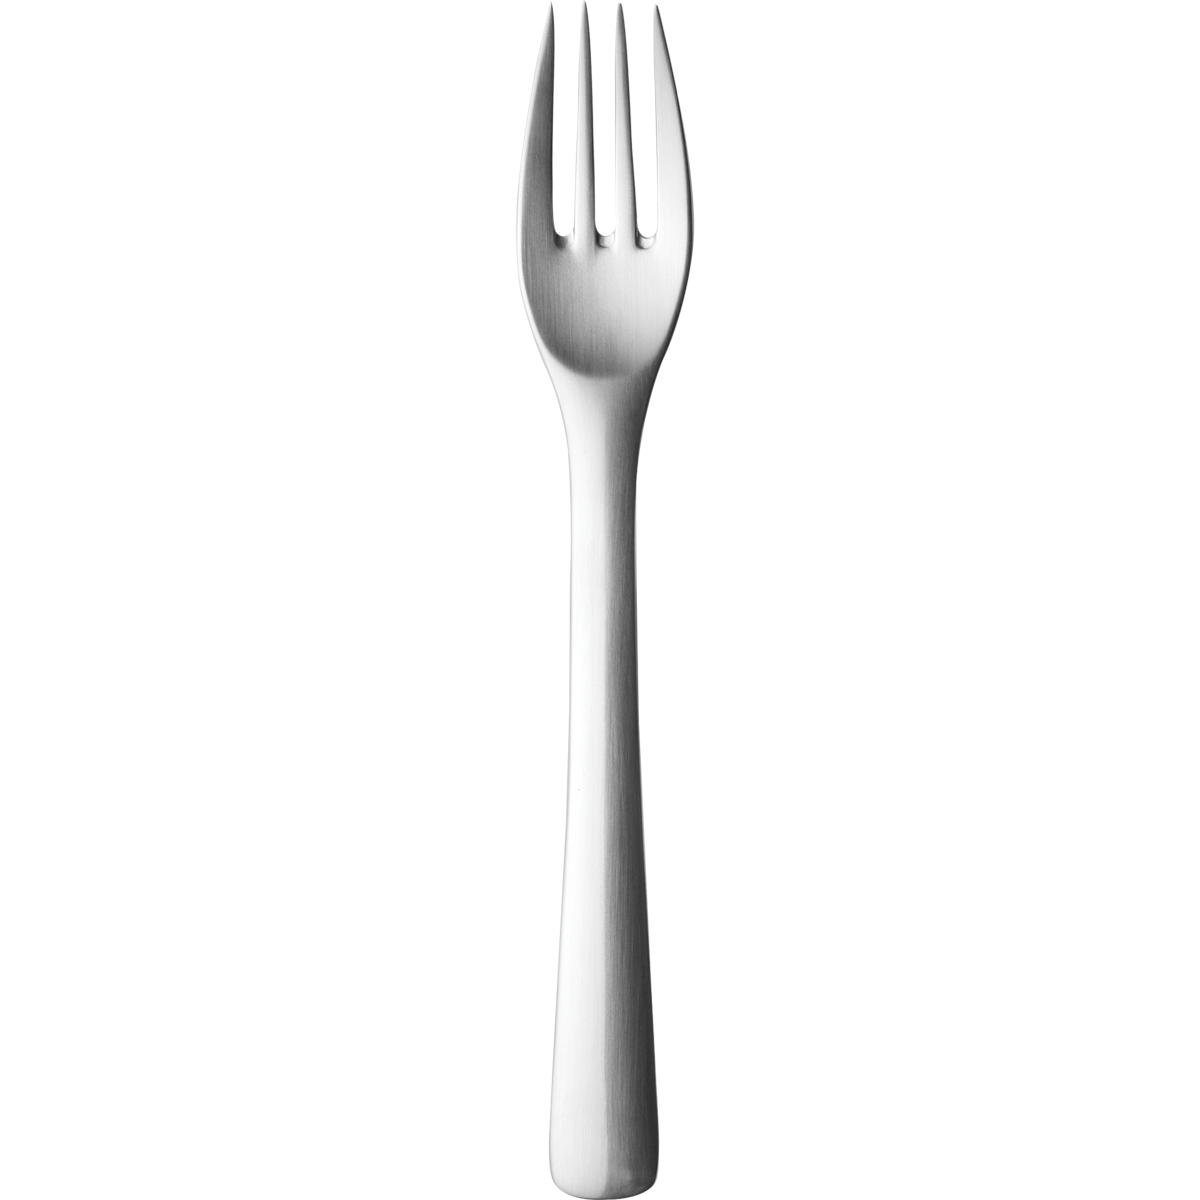 Fork Transparent Image